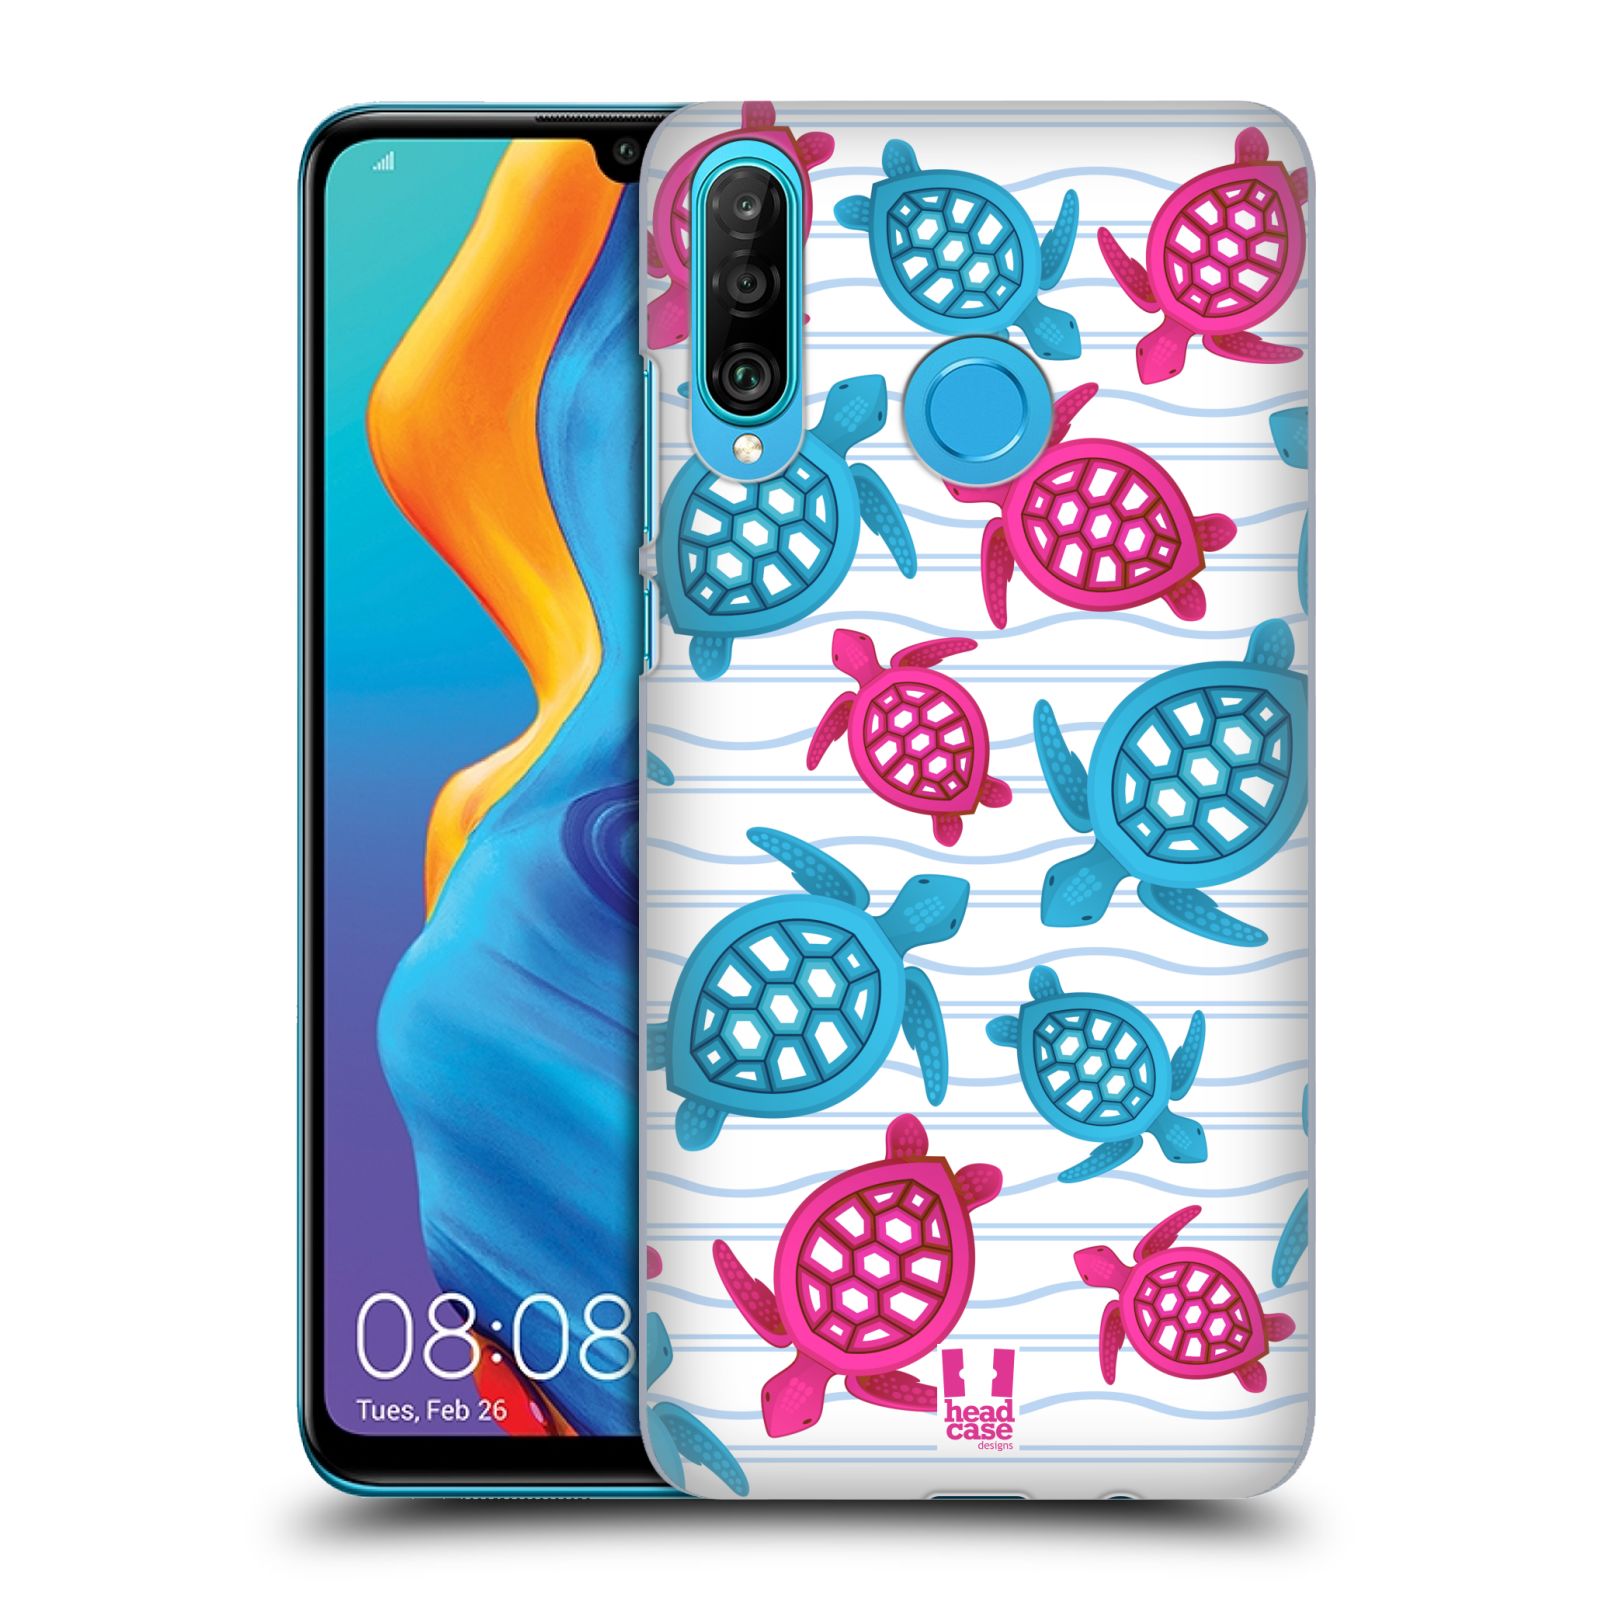 Zadní obal pro mobil Huawei P30 LITE - HEAD CASE - kreslený mořský vzor želvičky